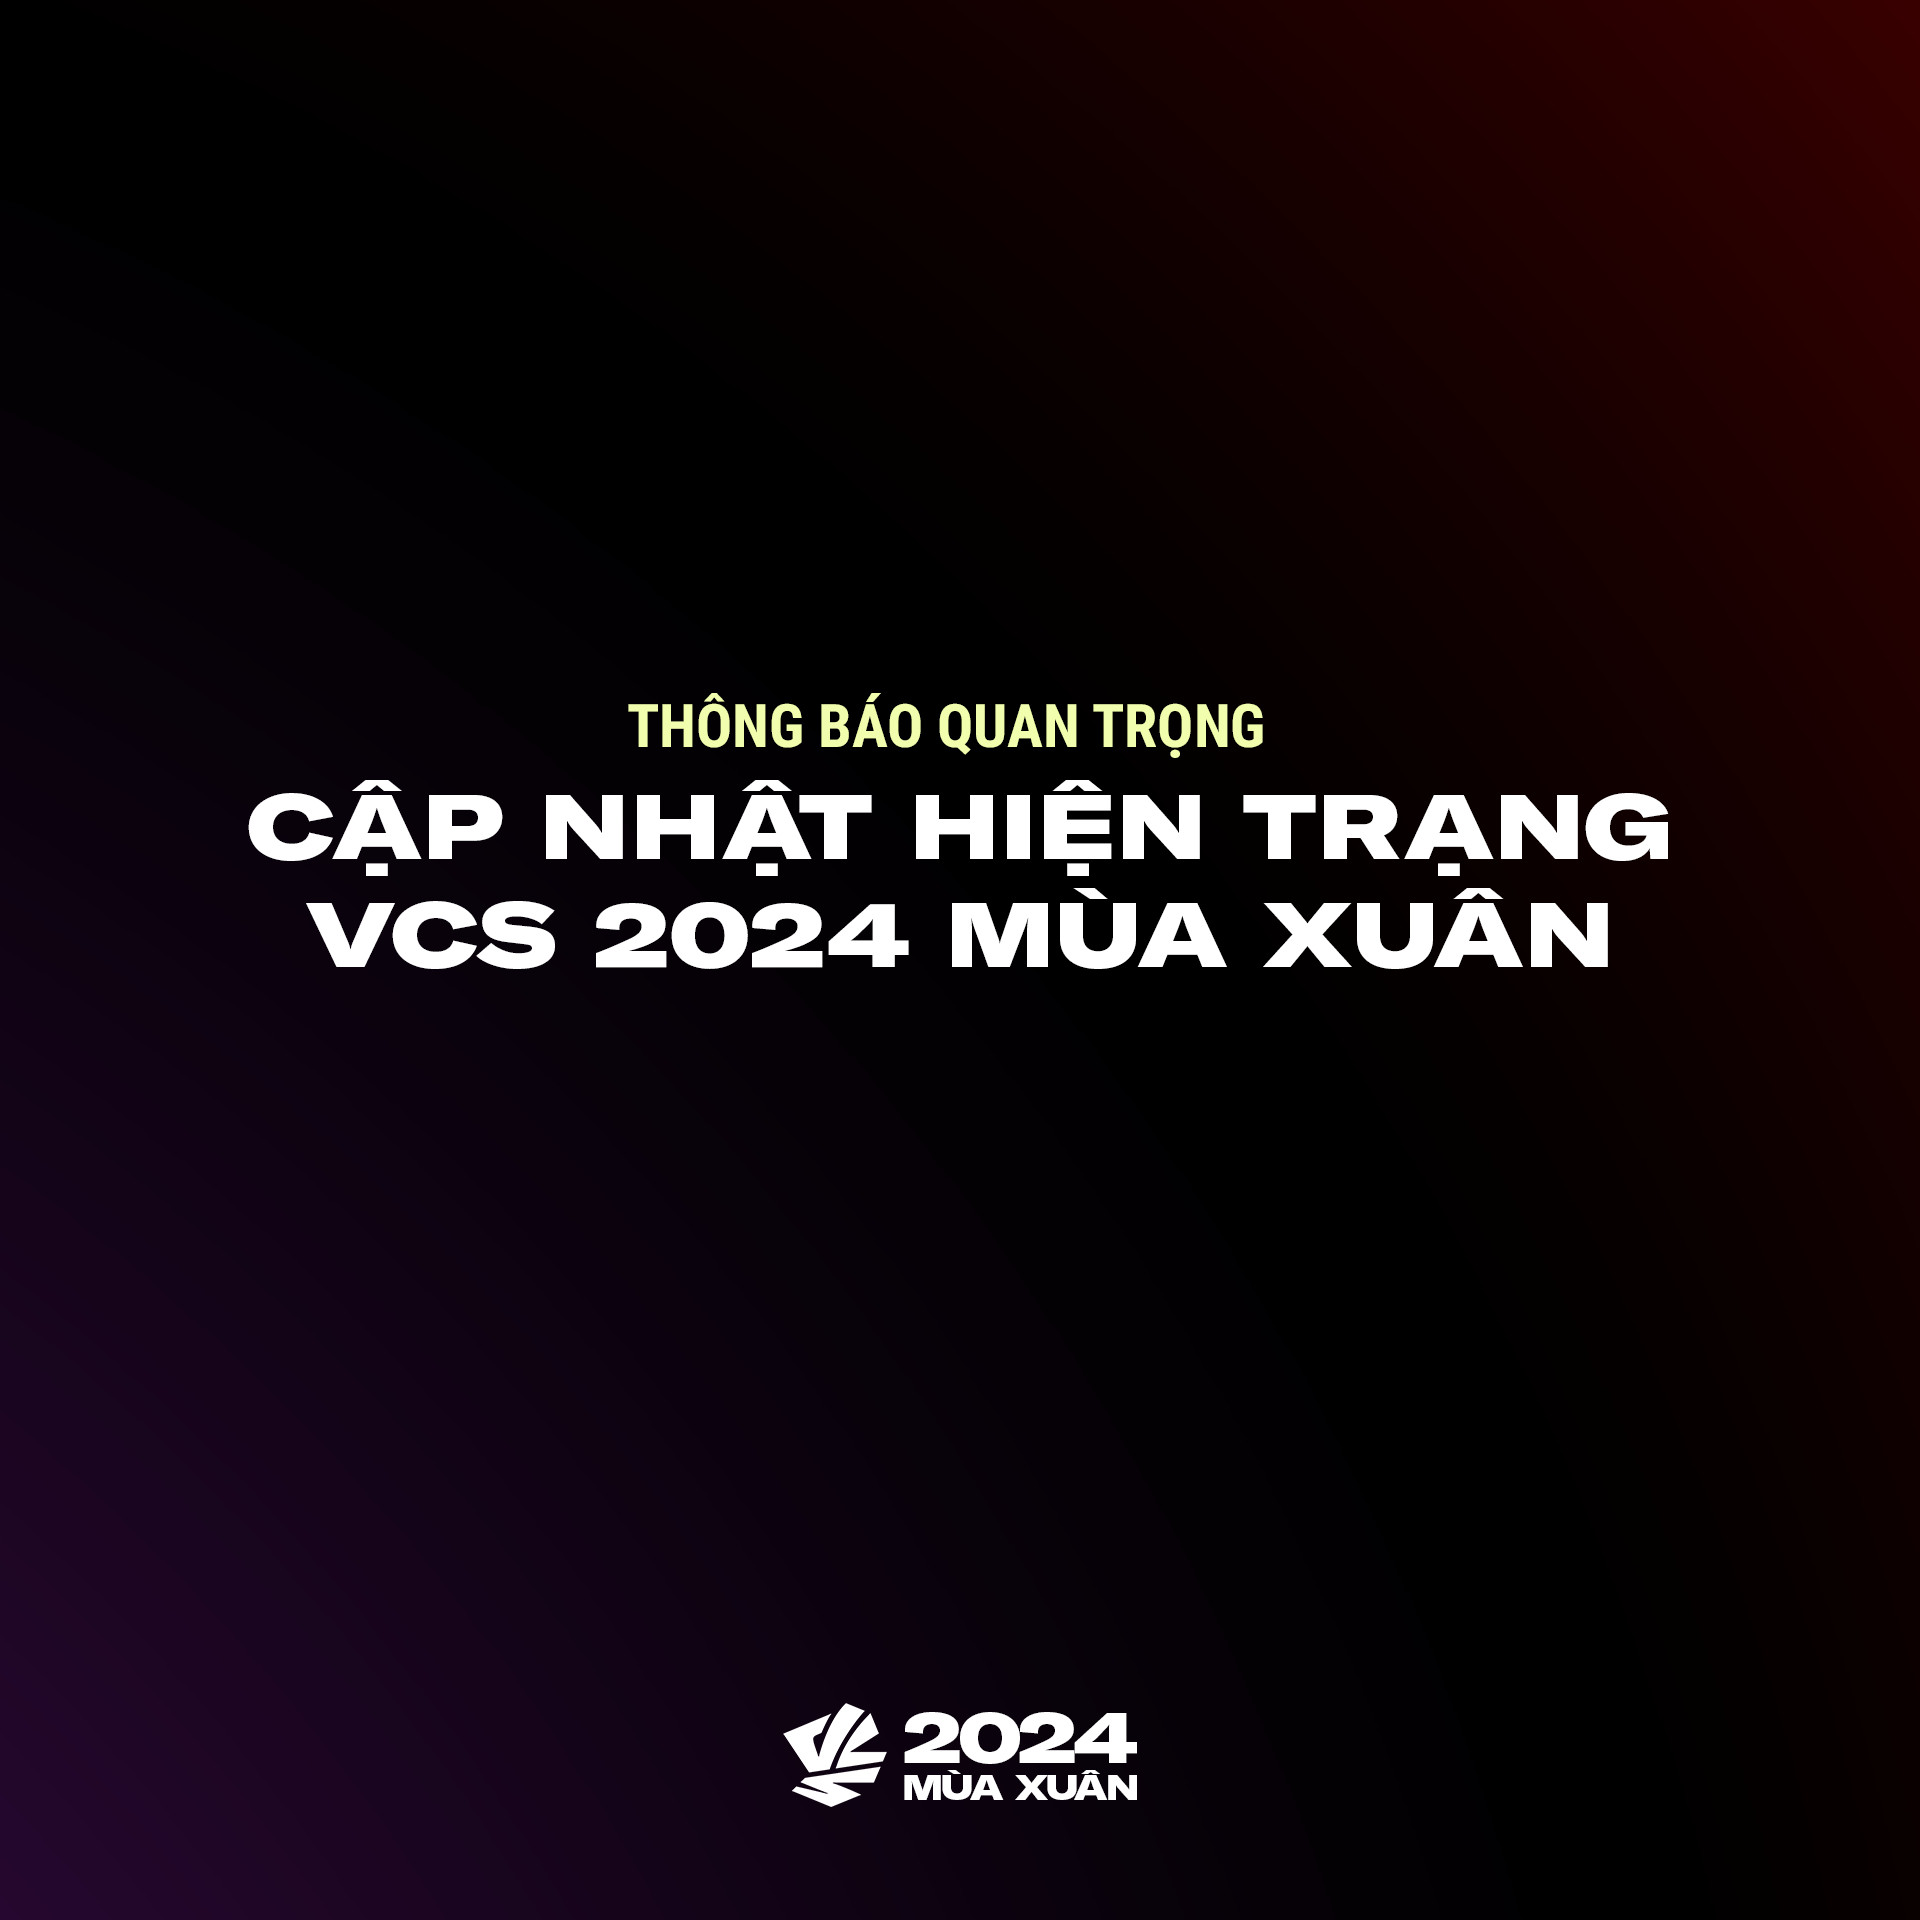 Vcs Mua Xuan 2024